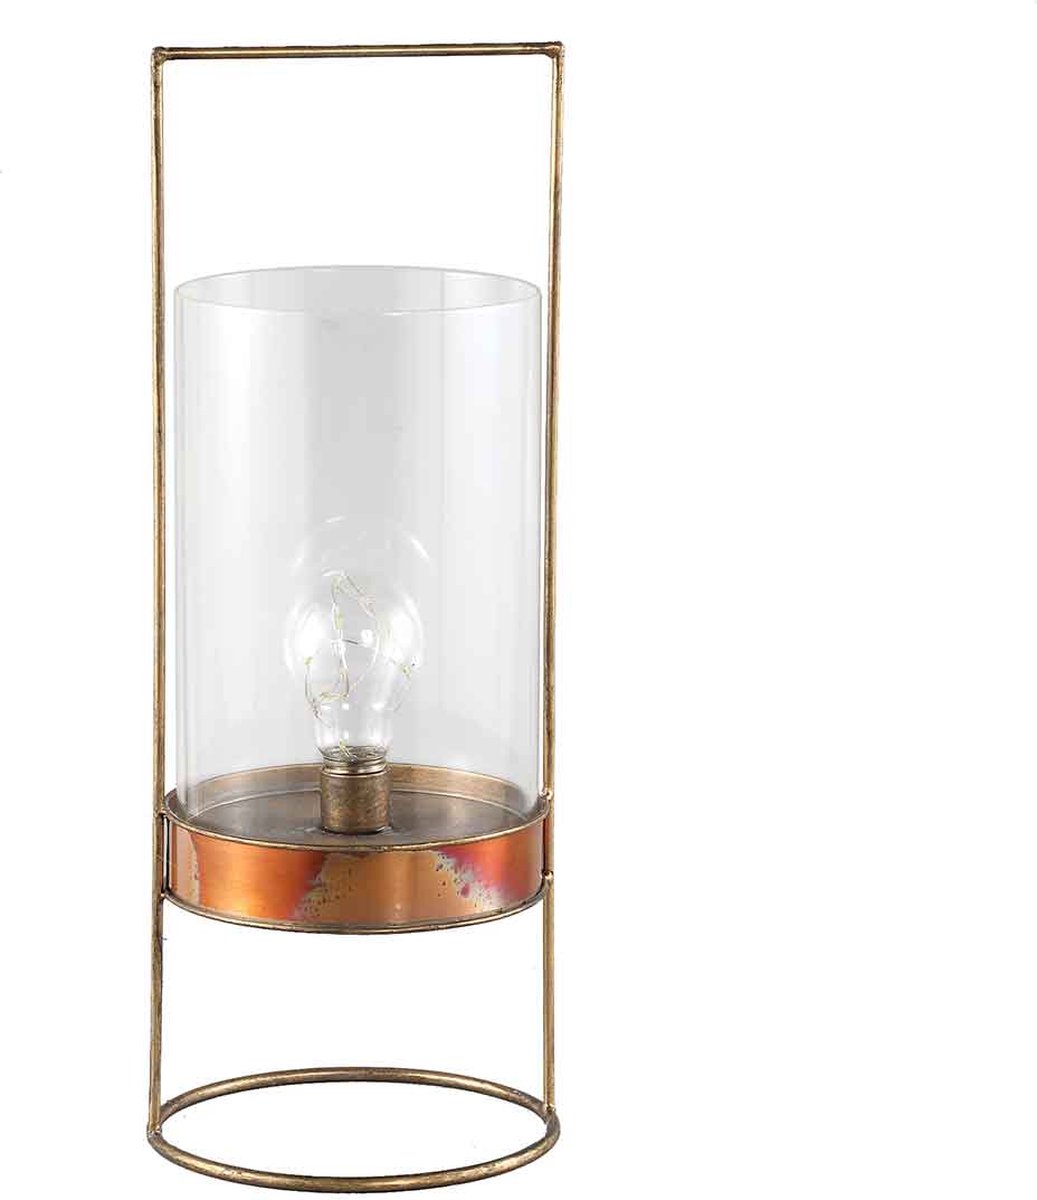 PTMD Amber metalen tafellamp met glas en LED verlichting - 17 x 17 x 46 cm. - messing kleur